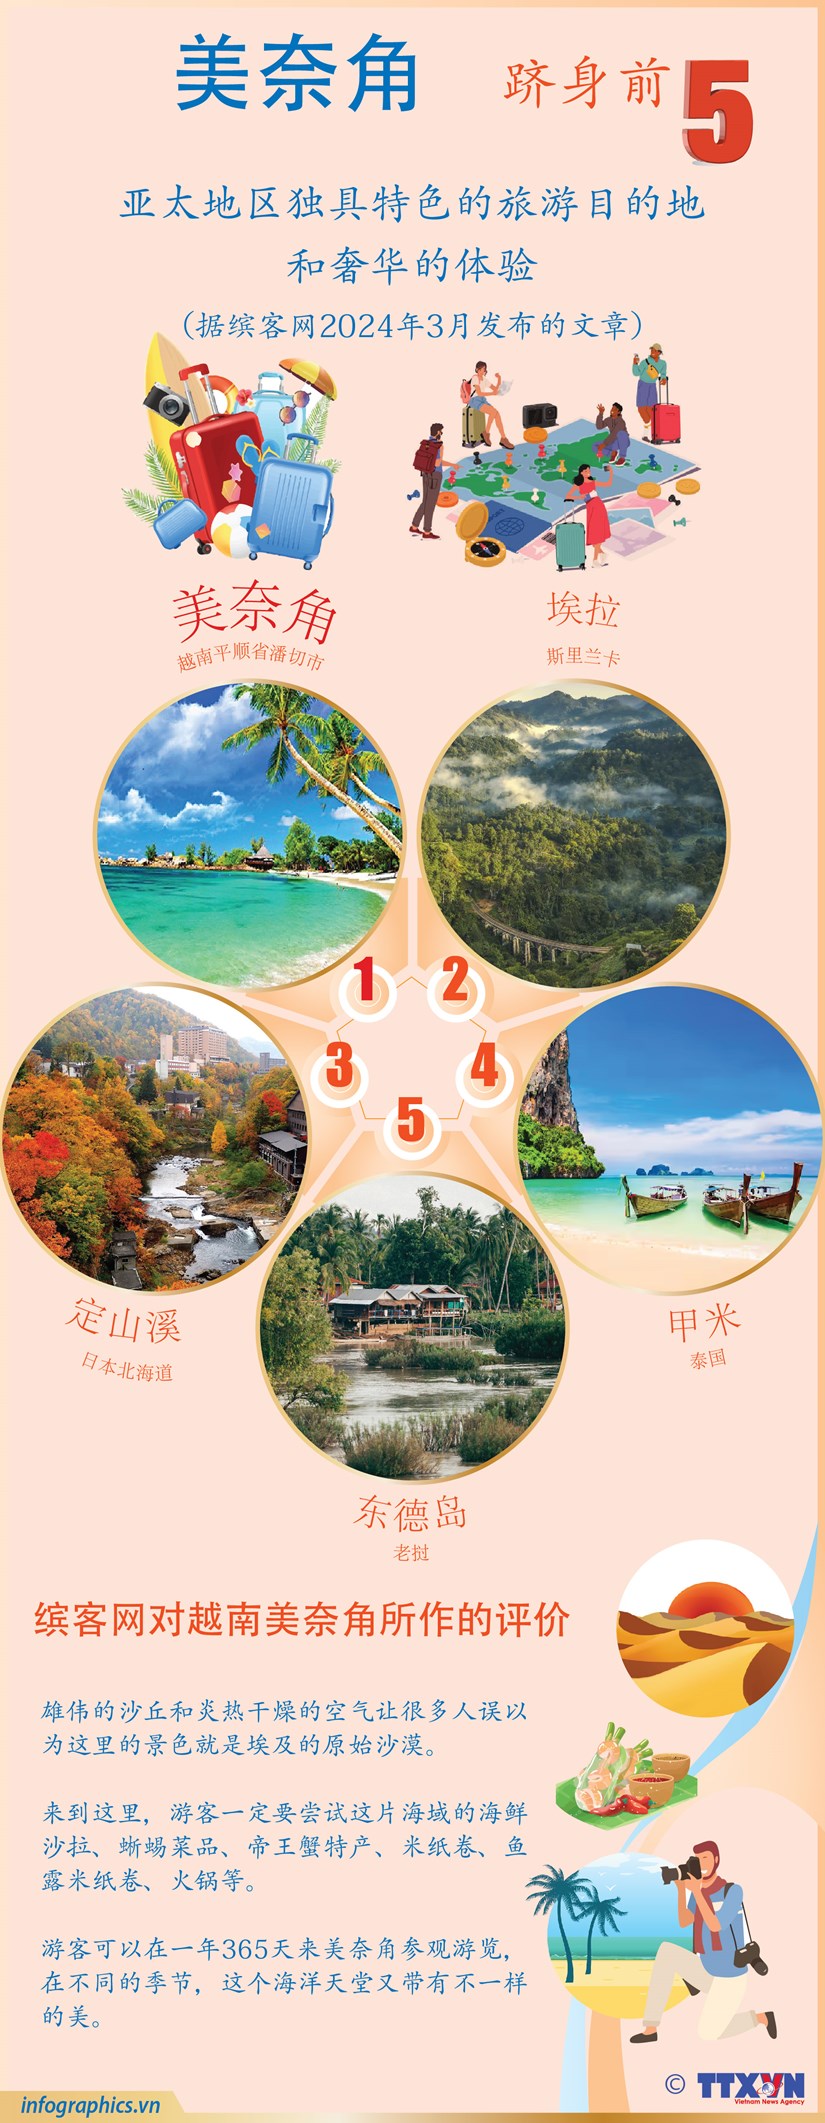 图表新闻：美奈角跻身前5亚太地区独具特色的旅游目的地和奢华的体验 hinh anh 1